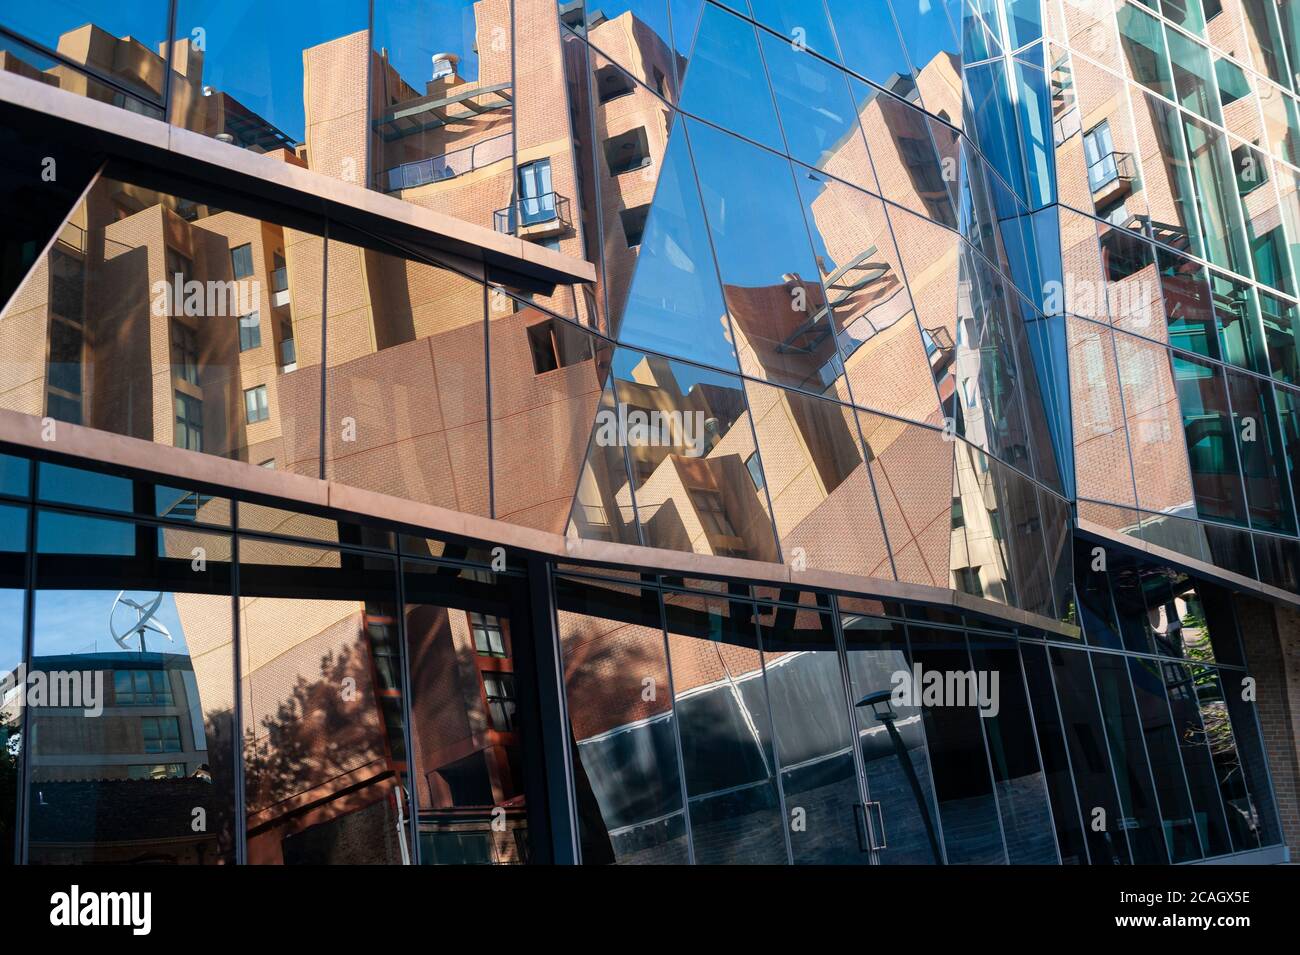 26.09.2019, Sydney, Nouvelle-Galles du Sud, Australie - bâtiment de l'aile Dr Chau Chak, qui abrite l'UTS Business School, conçu par Frank Gehry. 0SL190926D Banque D'Images